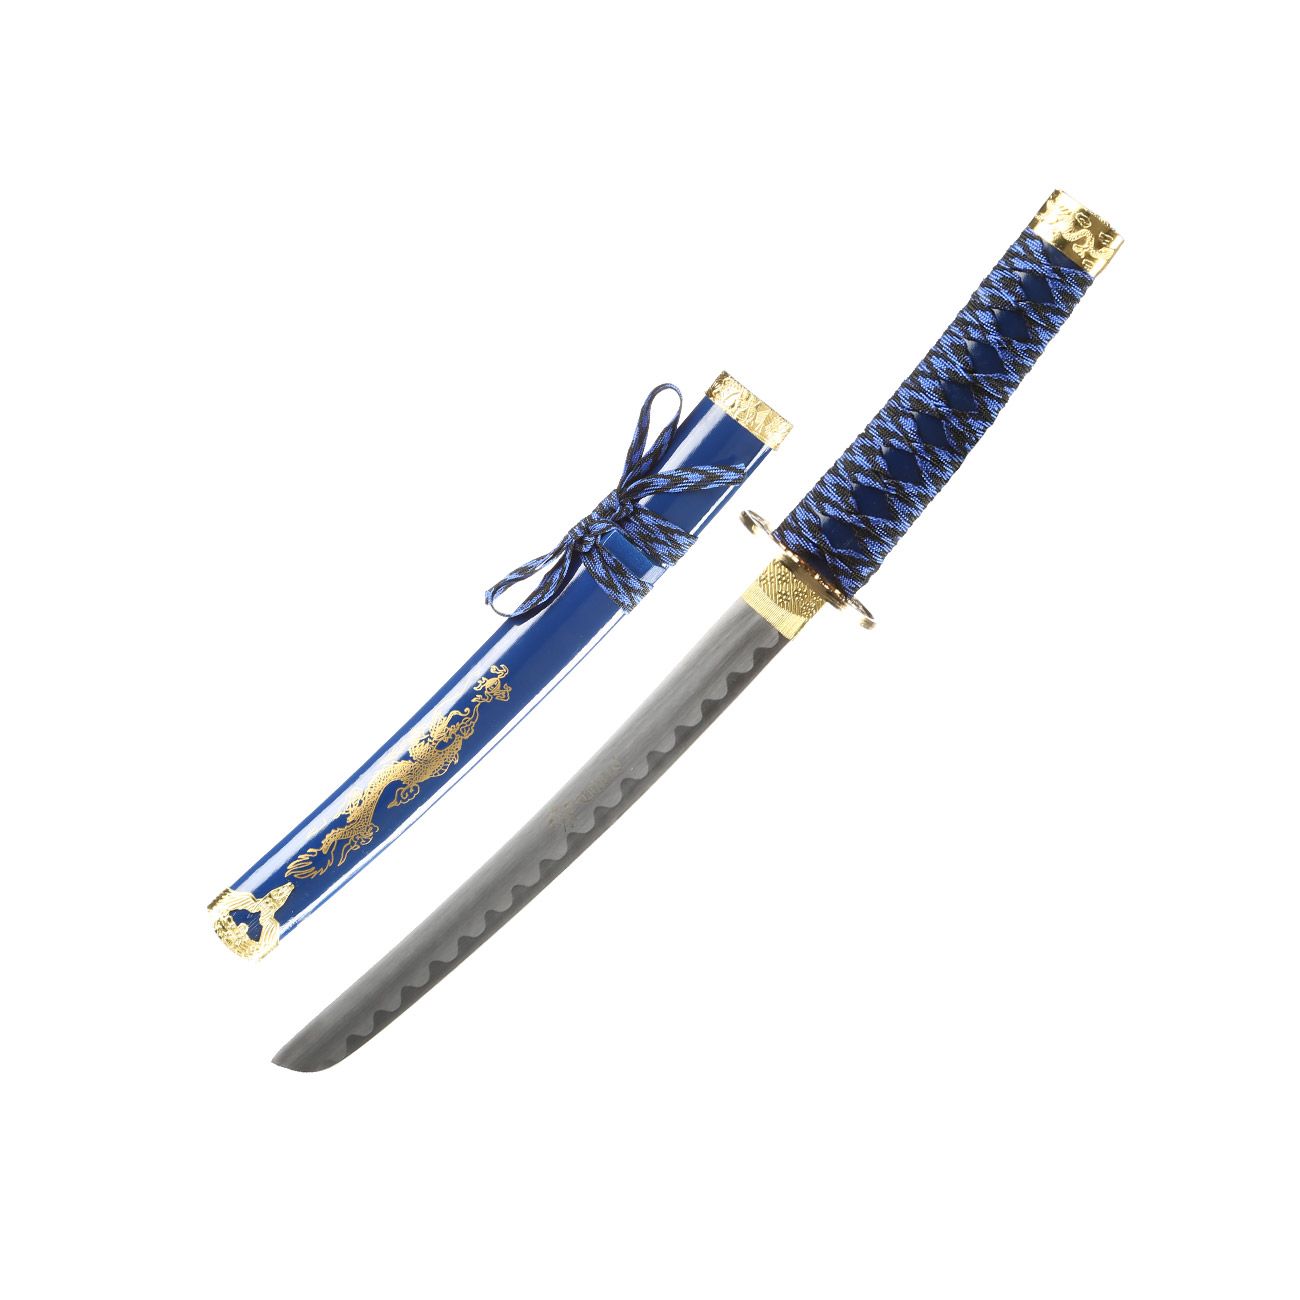 Tole 10 Imperial Schwertset Golden Dragon 3-teilig inkl. Ständer blau Bild 3